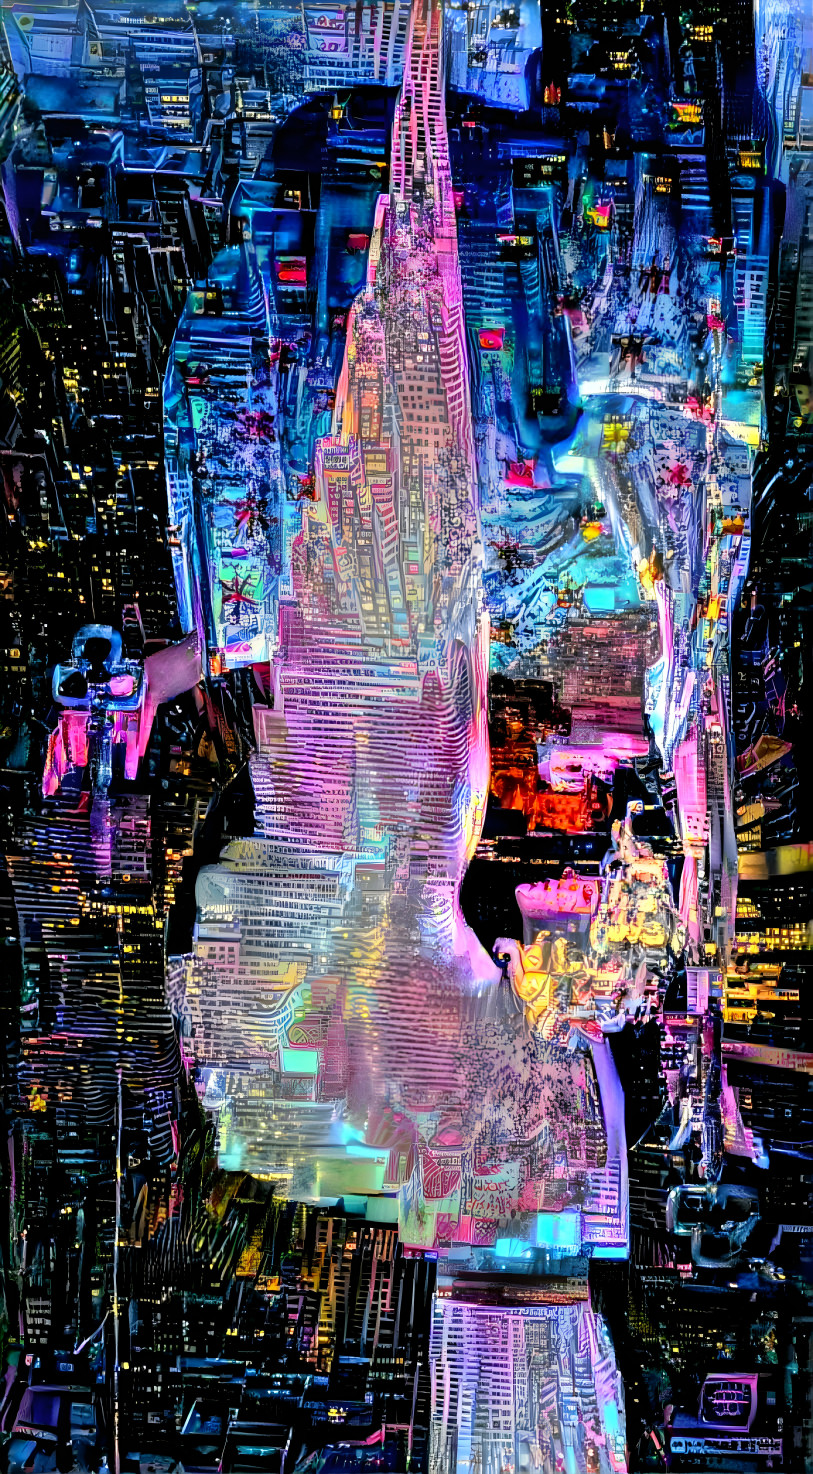 City of light